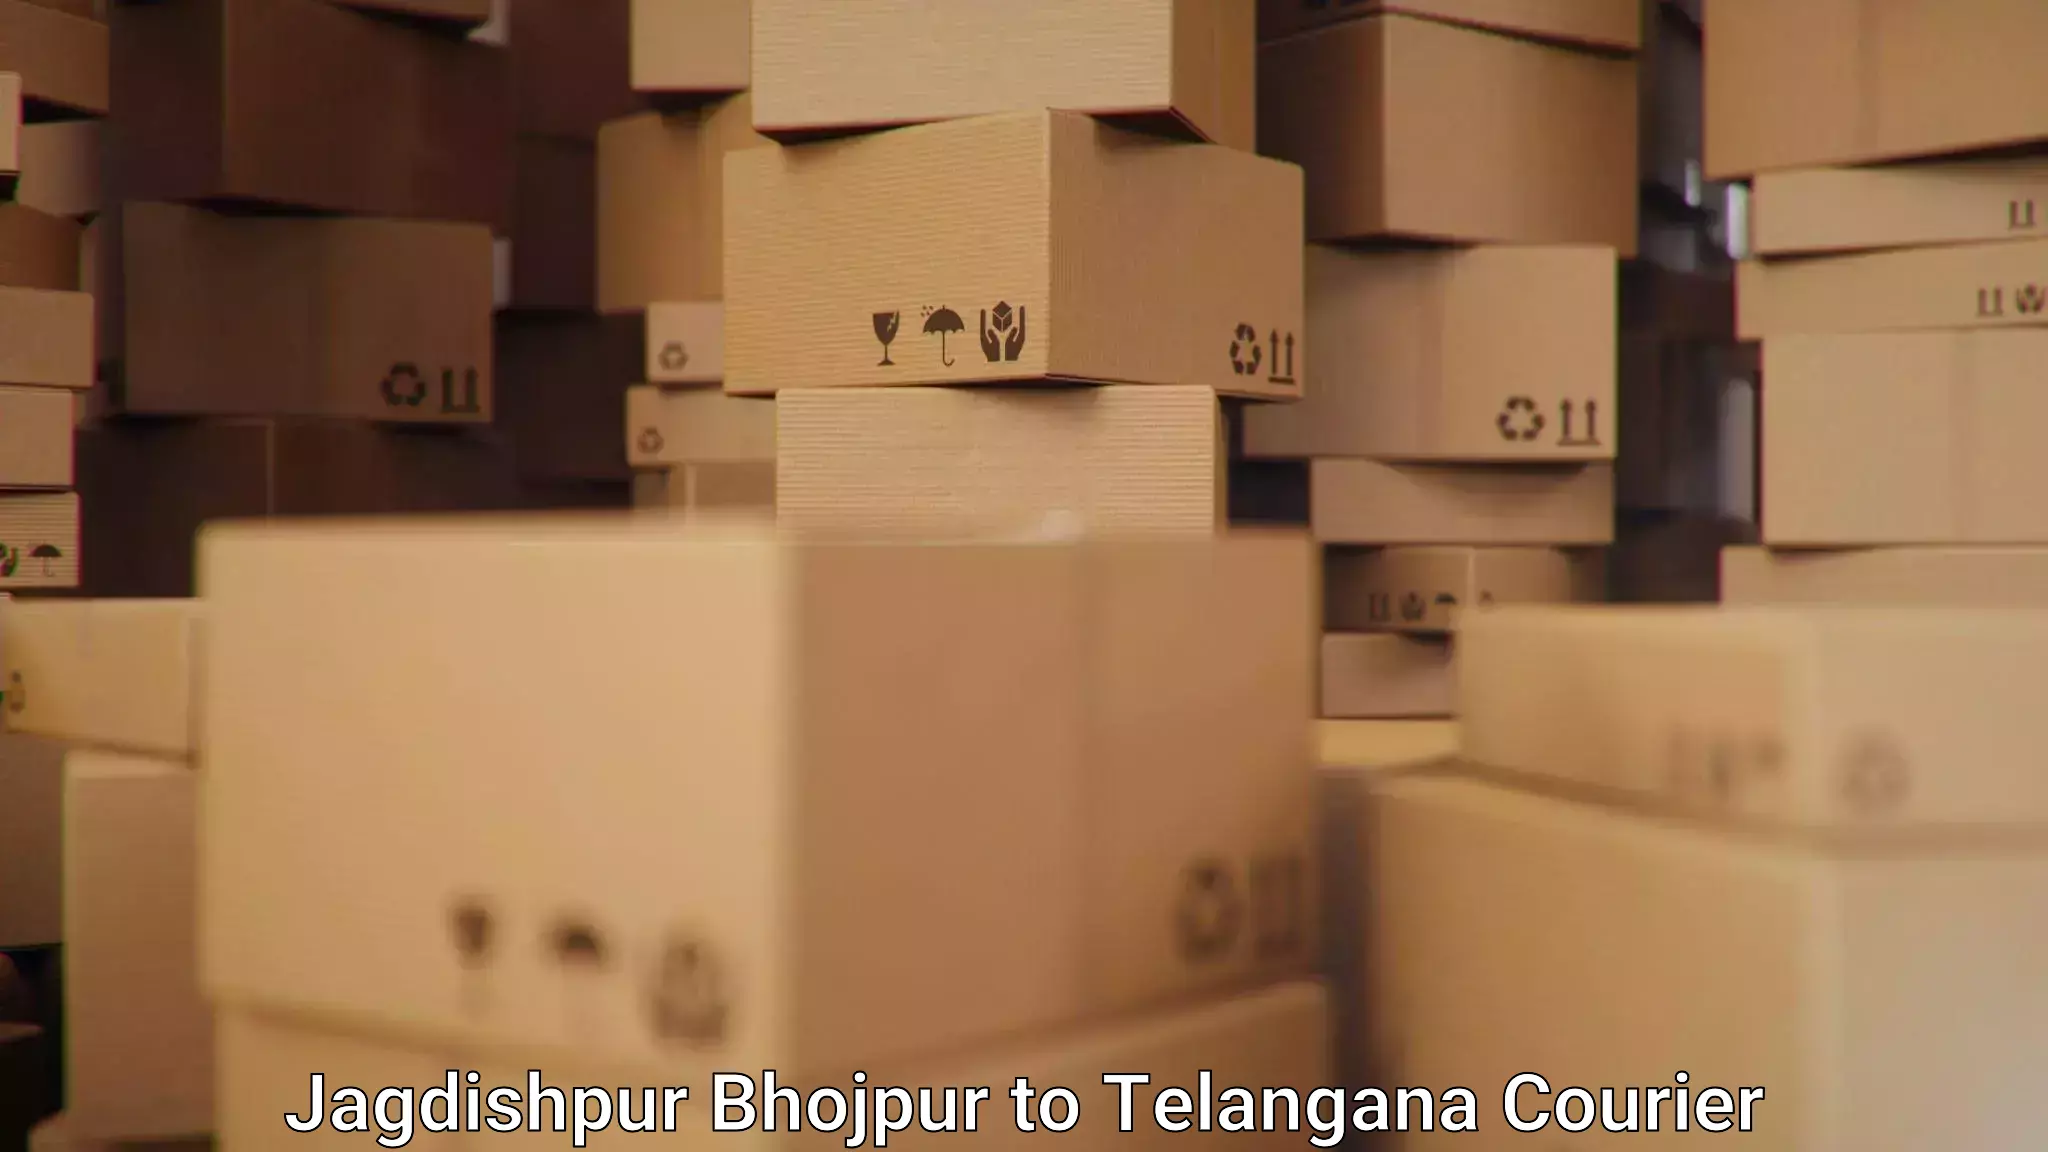 Lightweight courier Jagdishpur Bhojpur to Cheyyur